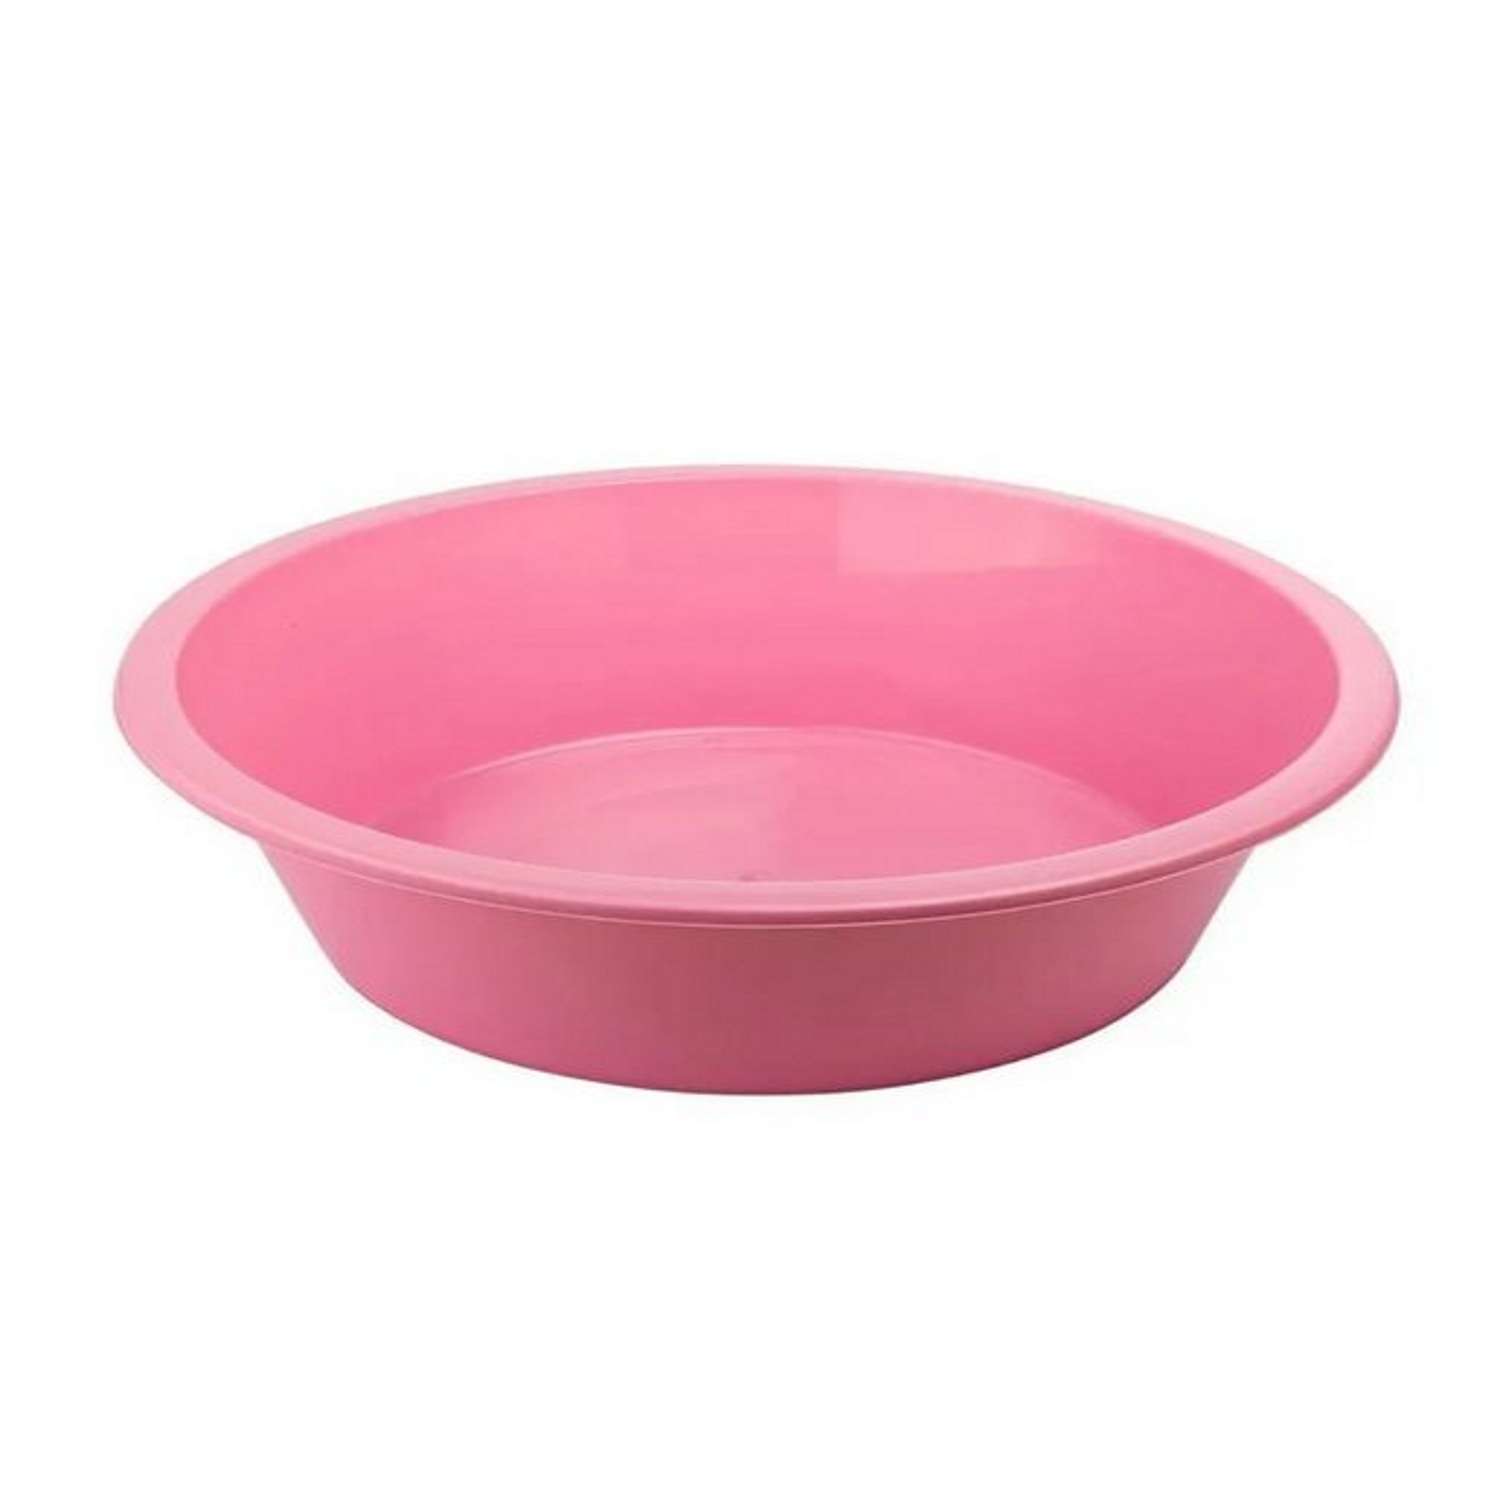 Таз elfplast круглый 5 литров розовый хозяйственный - фото 3